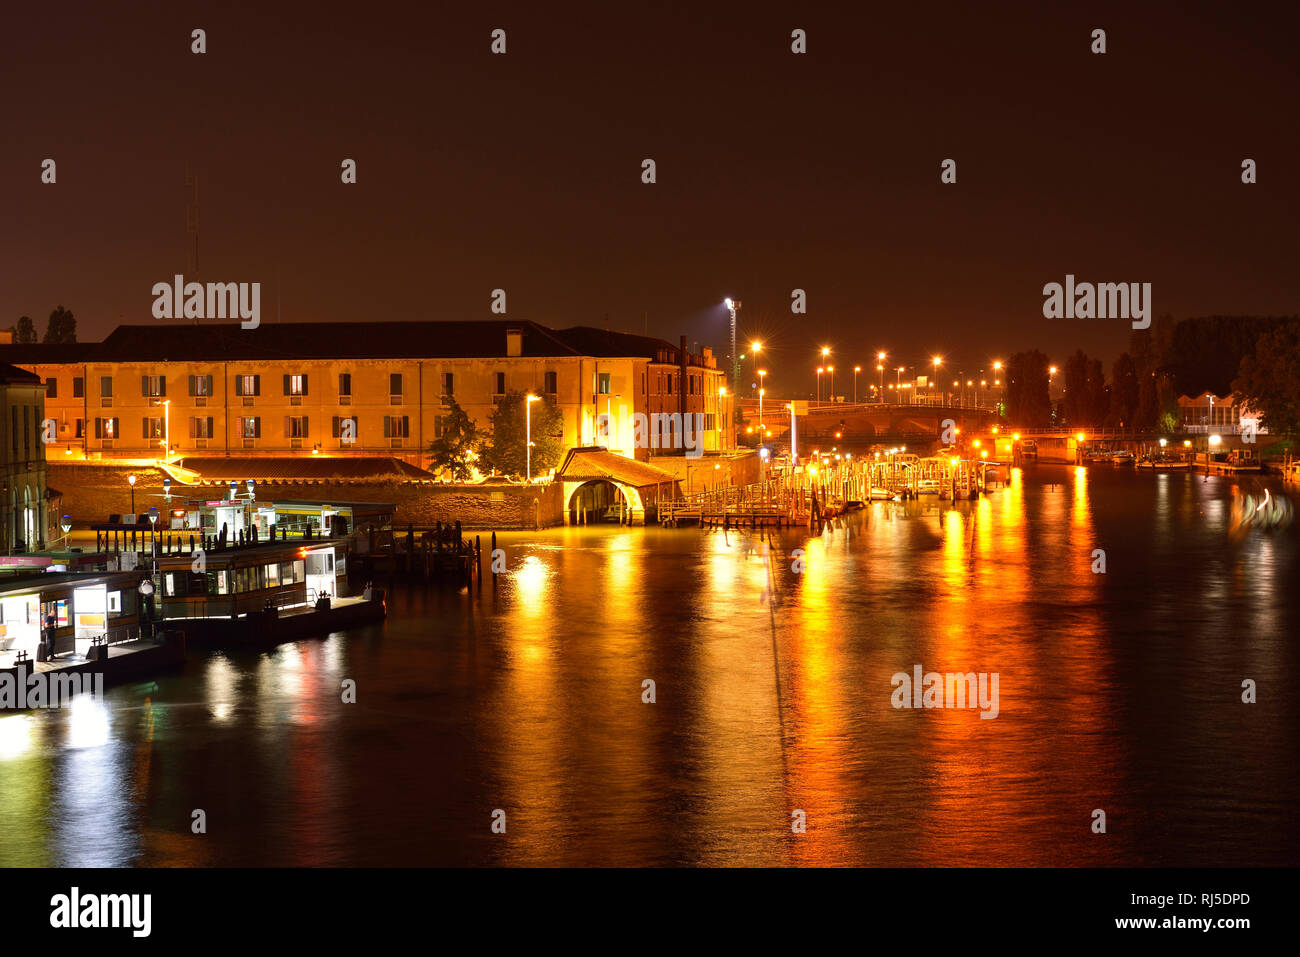 Blick auf den nächtlich erleuchteten Canal Grande mit der Haltestelle Piazzale Roma in Venedig Foto Stock